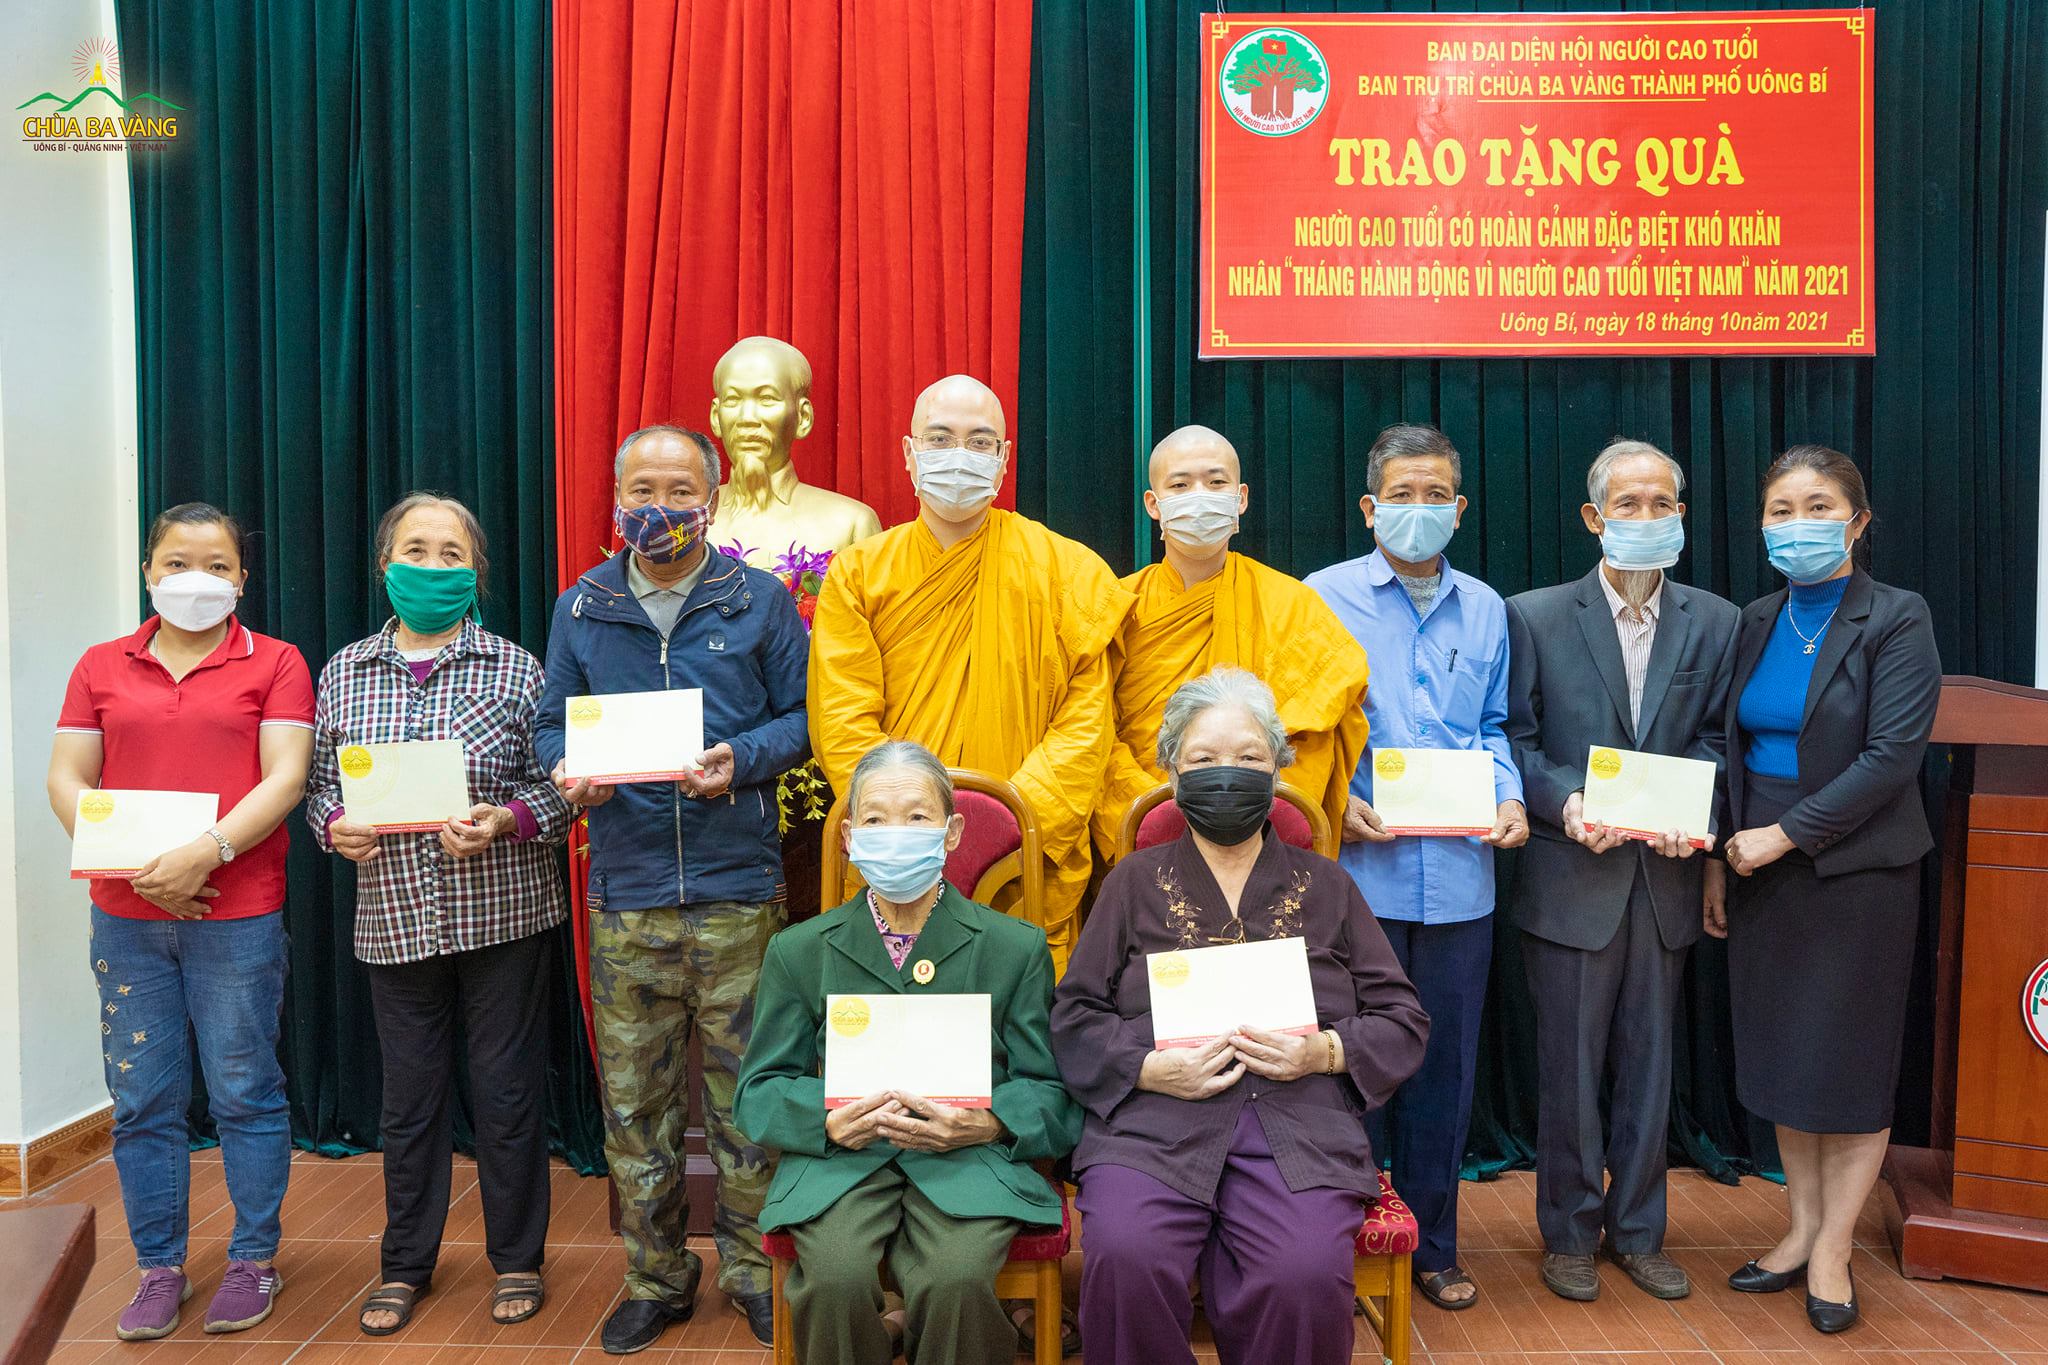 Người cao tuổi có hoàn cảnh khó khăn trên địa bàn thành phố Uông Bí đón nhận món quà của chùa Ba Vàng